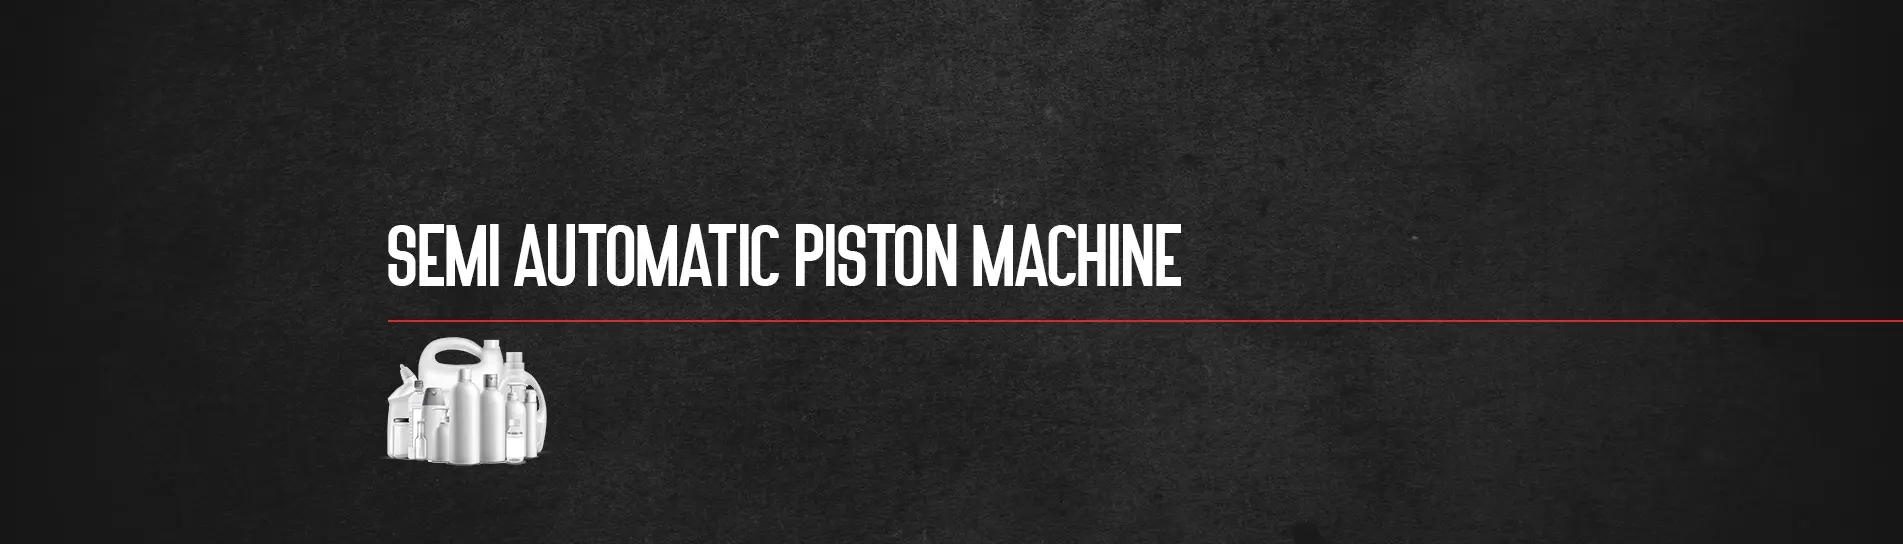 semi-automatic-piston-filling-machine